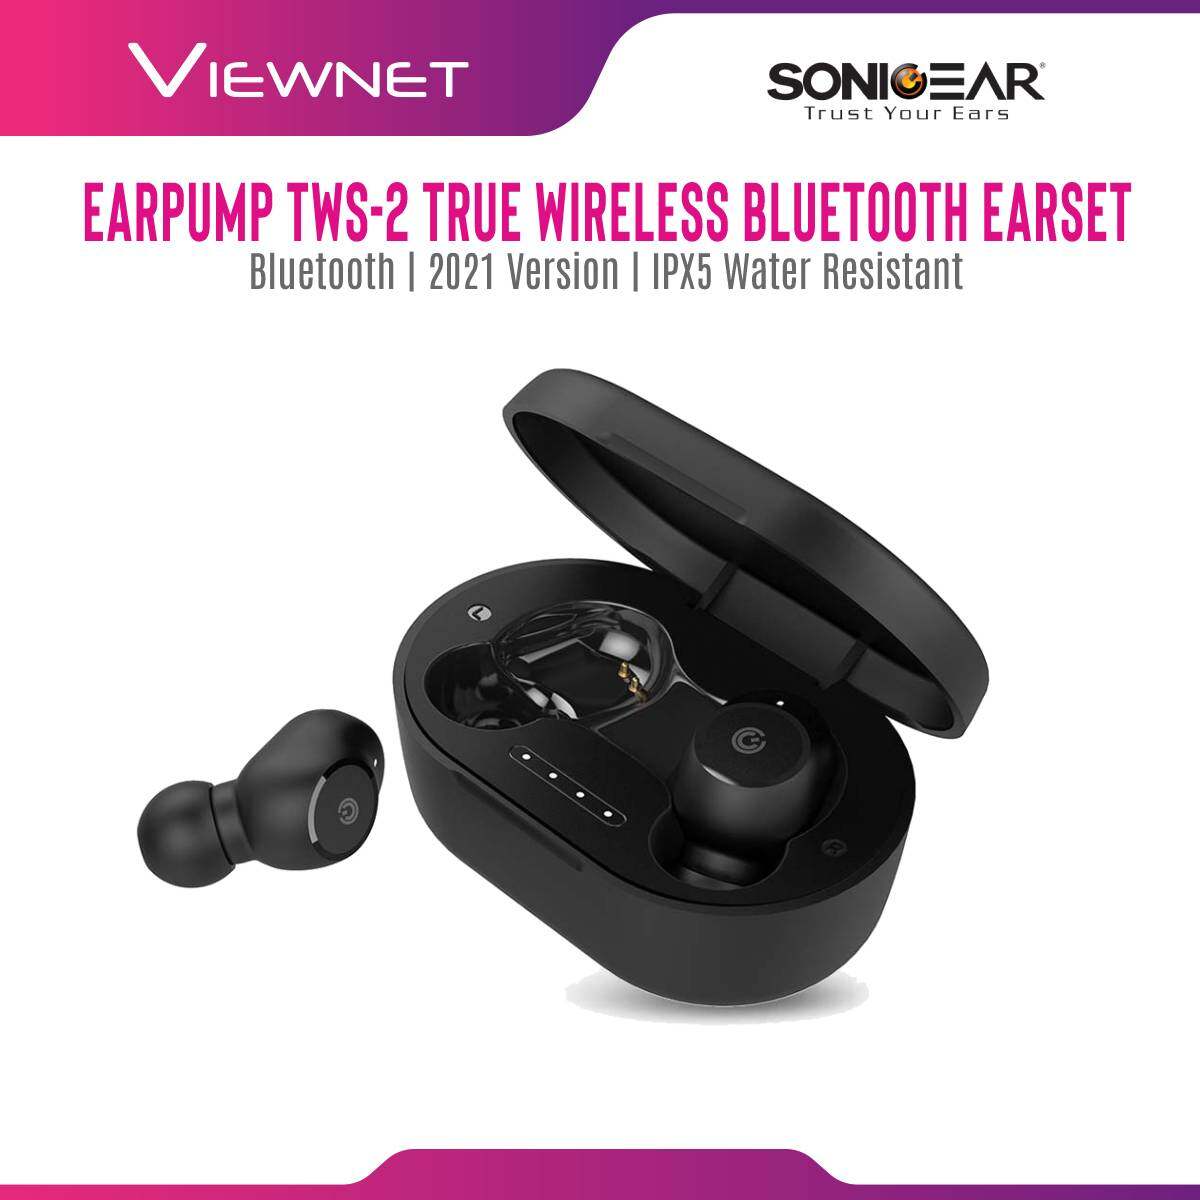 SonicGear Earpump TWS-2 True Wireless Bluetooth Earset with IPX5 Water Resistant